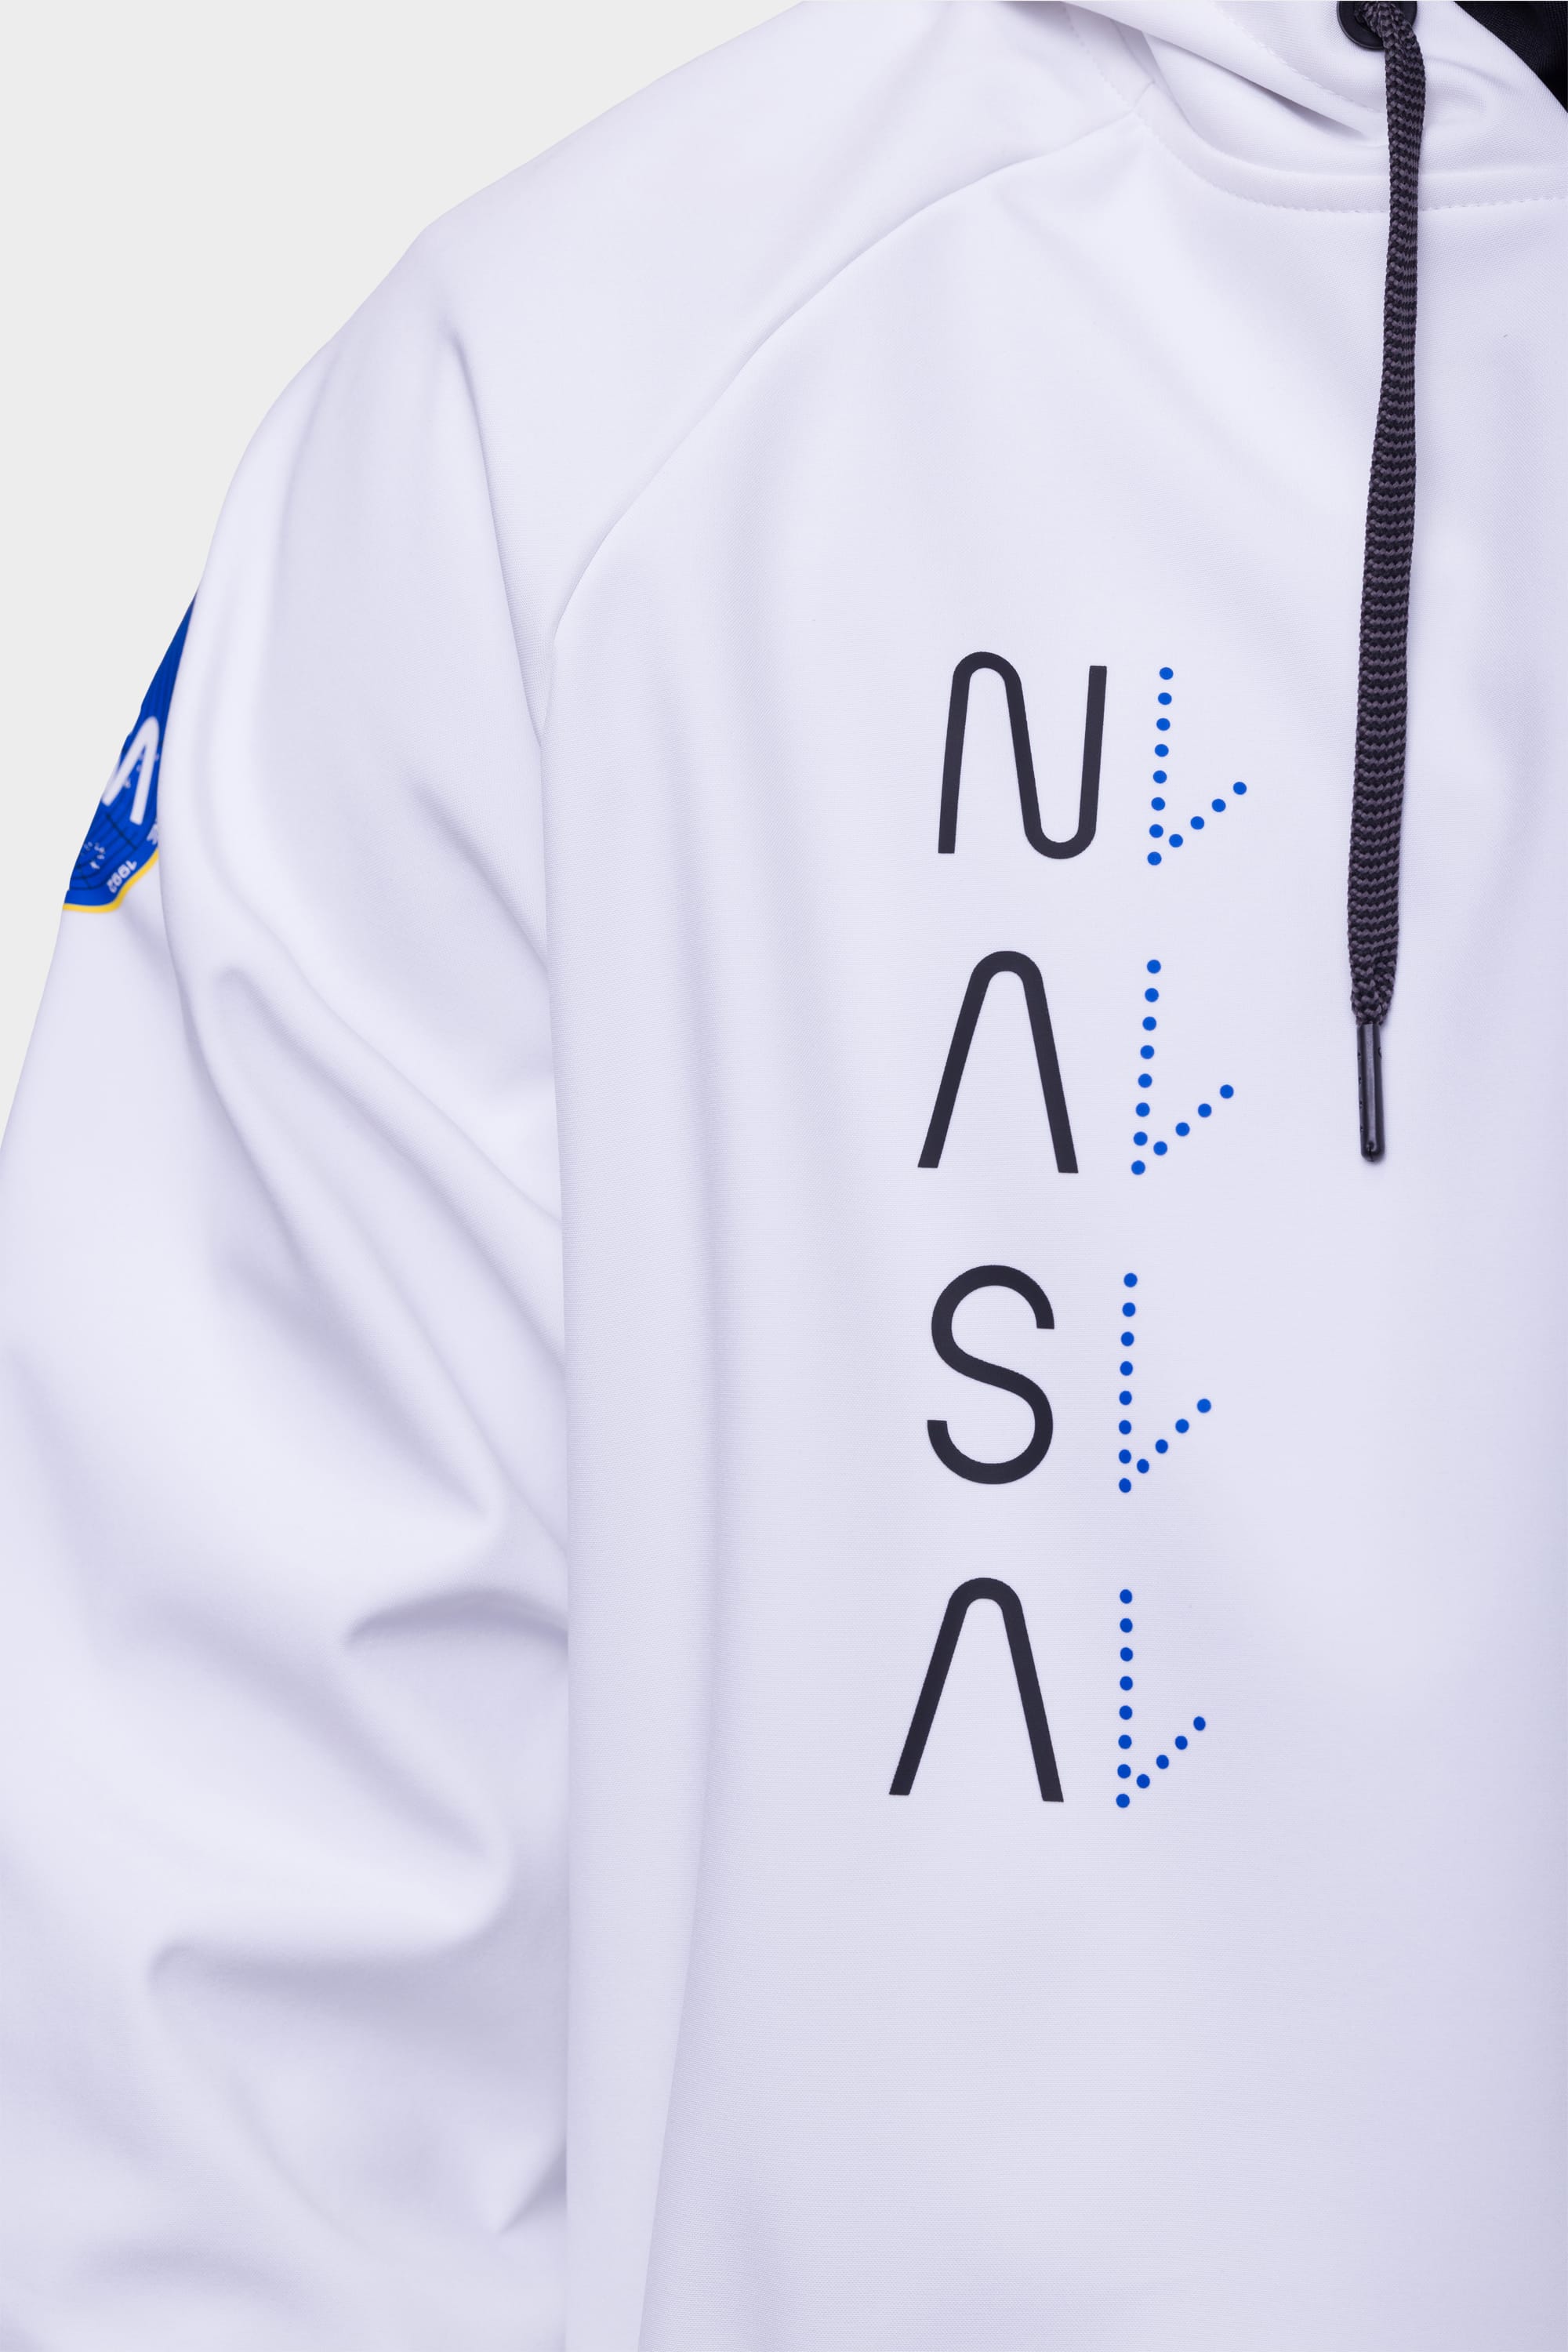 NASA WHITE